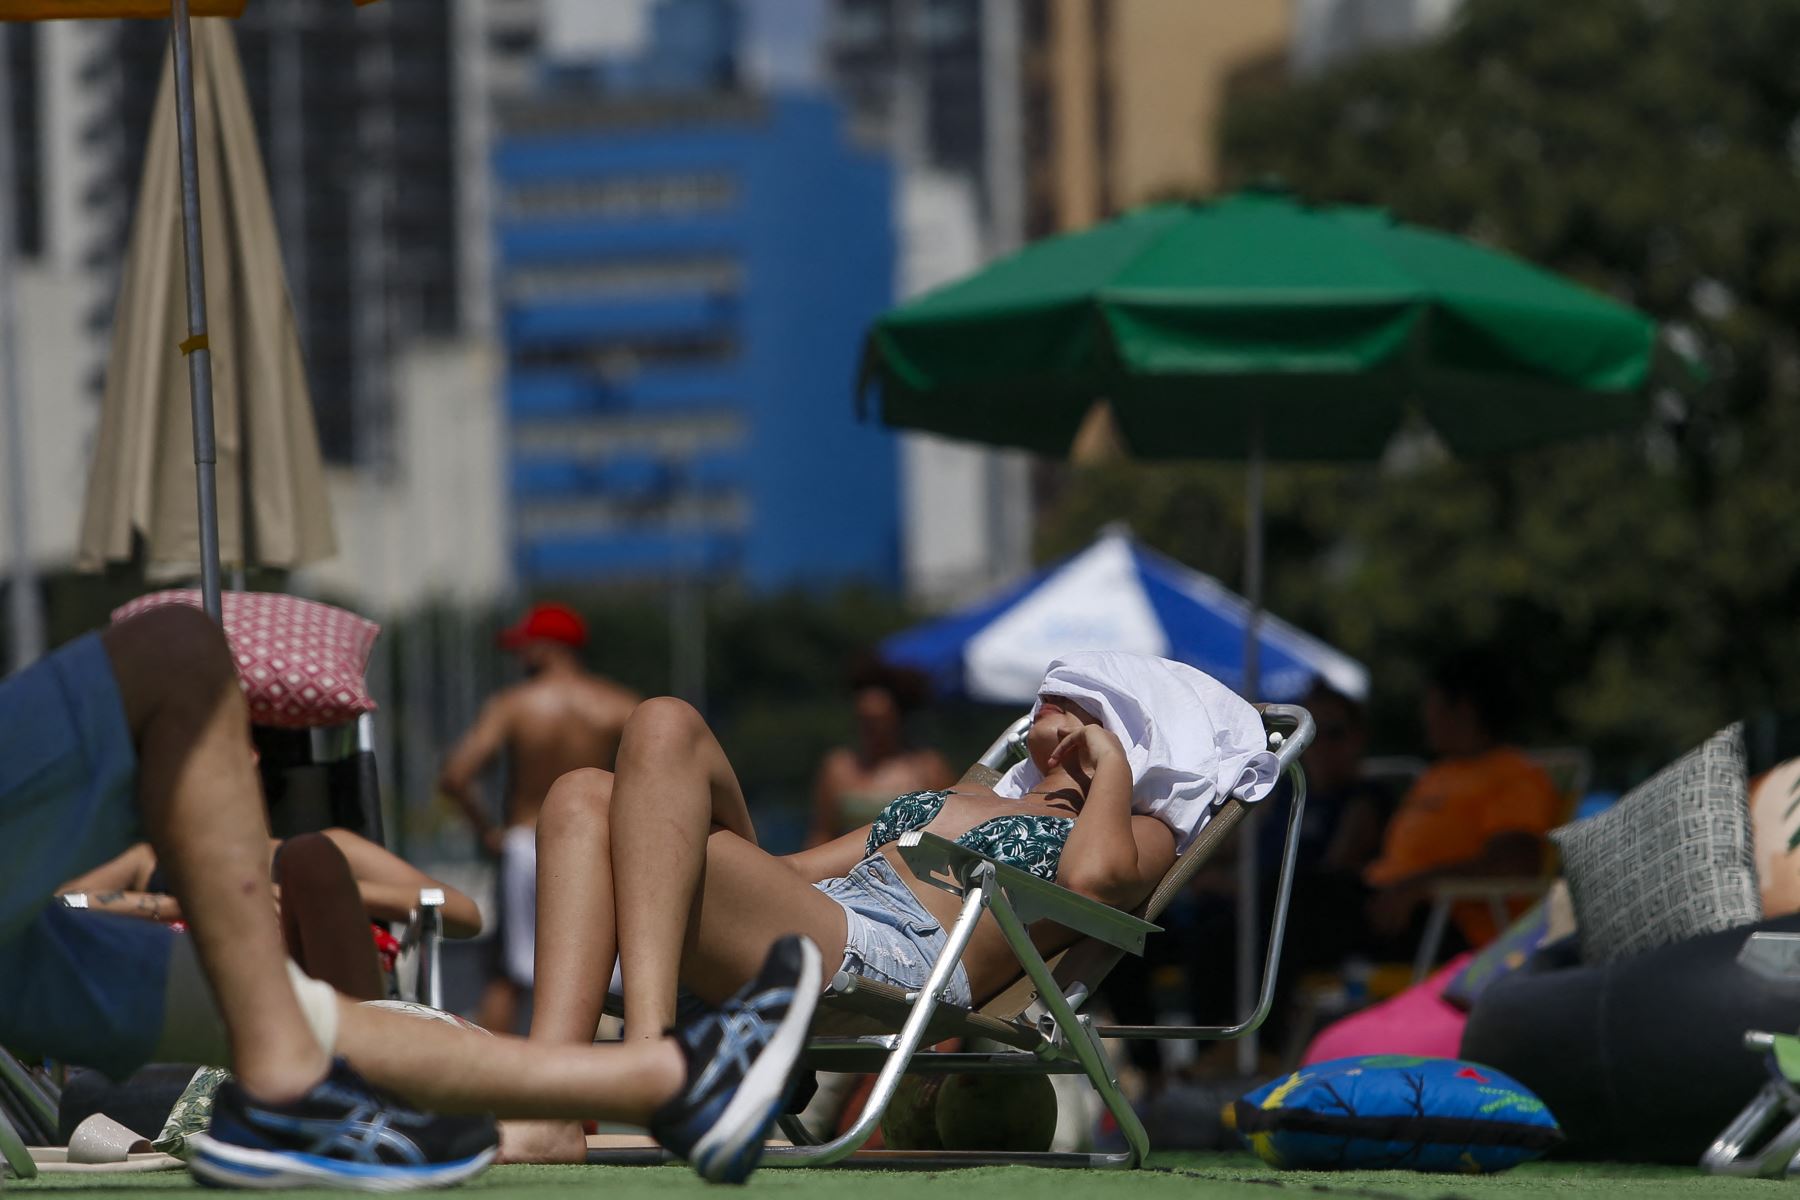 Una nueva ola de calor está azotando Brasil, con temperaturas récord que llevaron a los residentes de Río de Janeiro y Sao Paulo el domingo a acudir a playas y parques. En el oeste de Río, la sensación térmica alcanzó los 60,1 grados centígrados el sábado. Foto: AFP